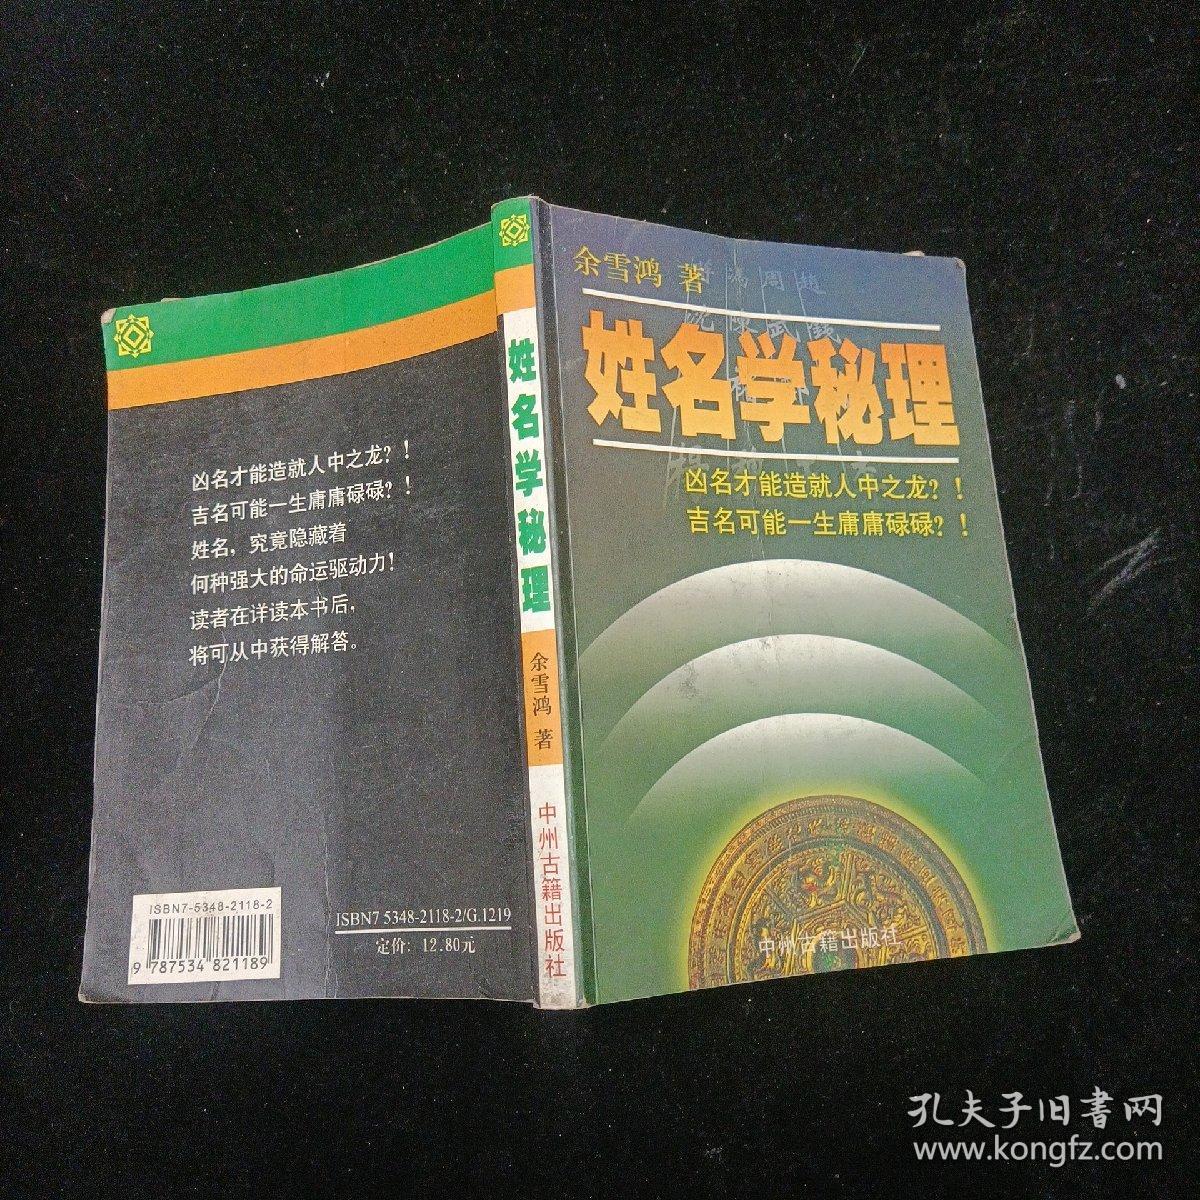 姓名学秘理 余雪鸿 中州古籍出版社 1999年一版一印